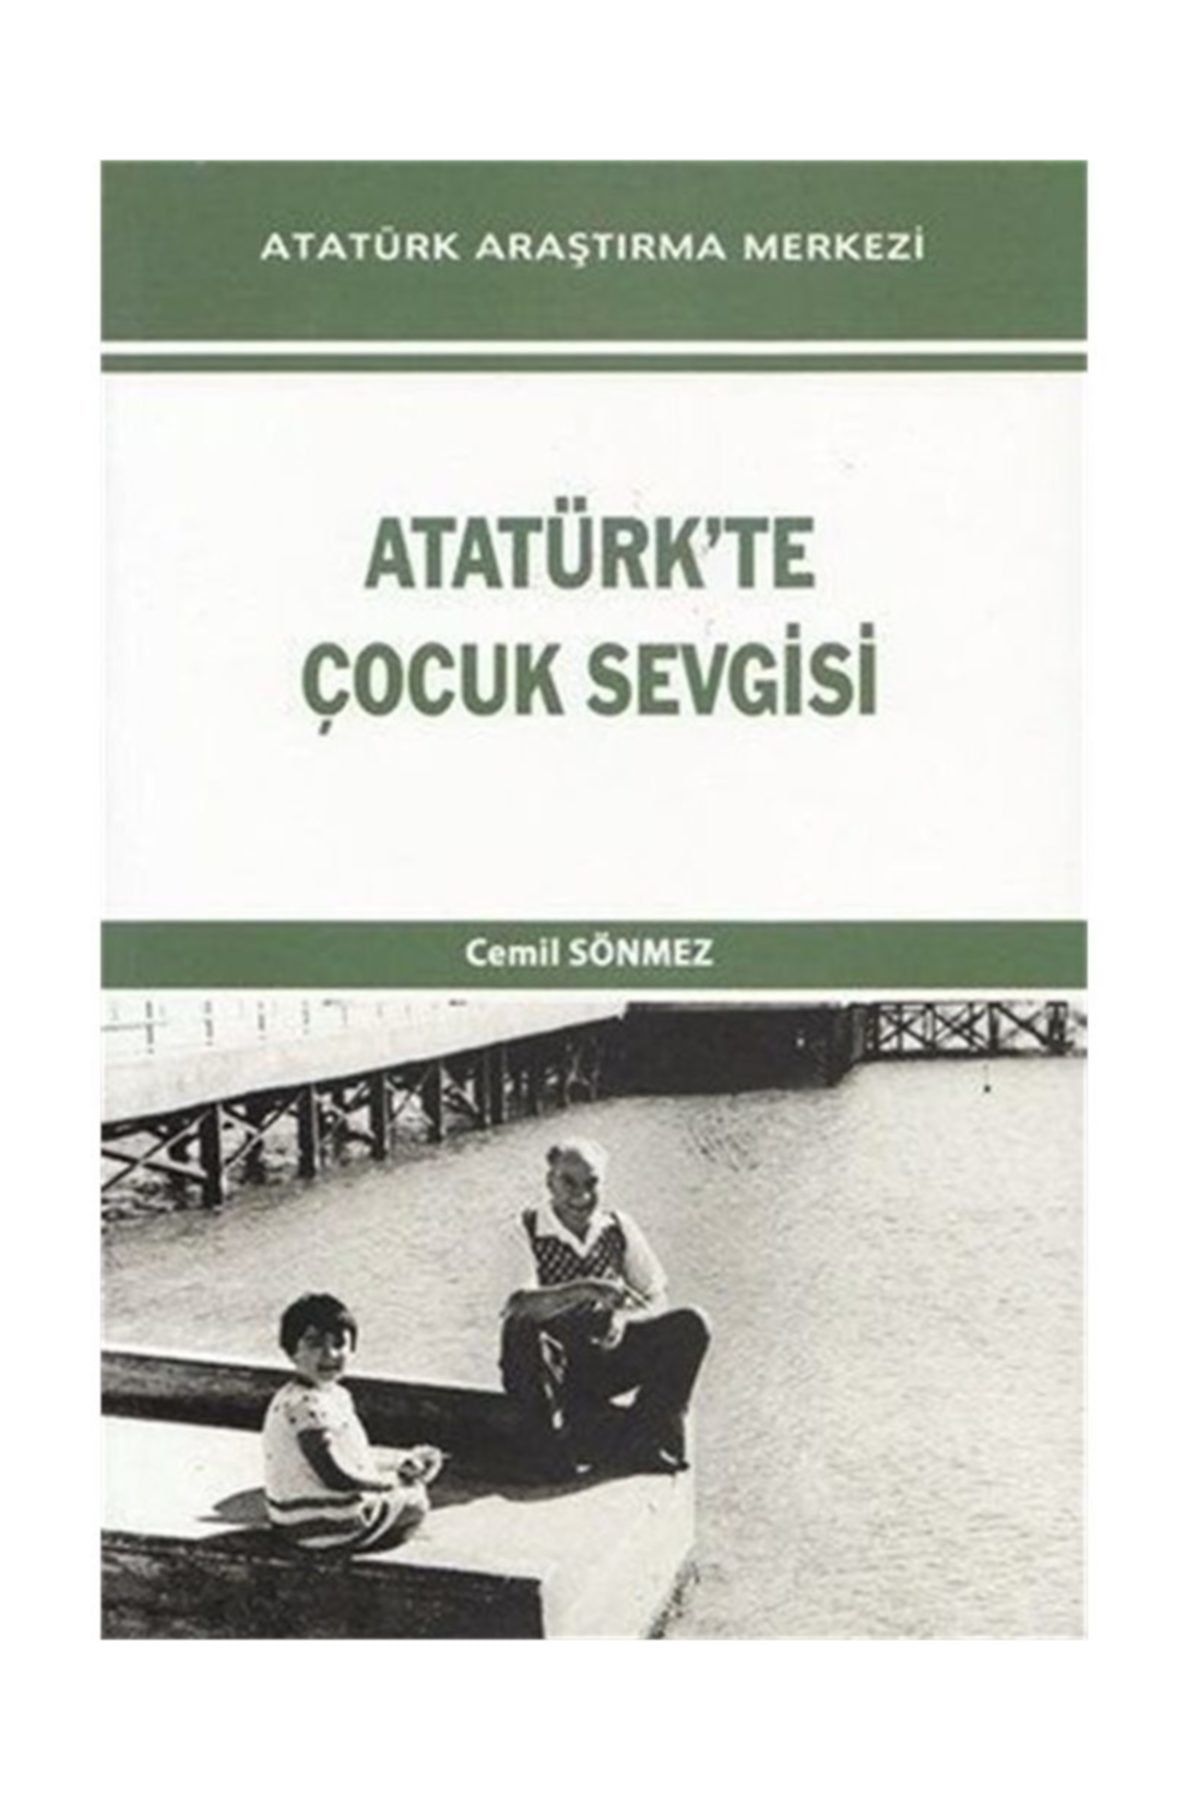 Atatürk Araştırma Merkezi Atatürk'te Çocuk Sevgisi